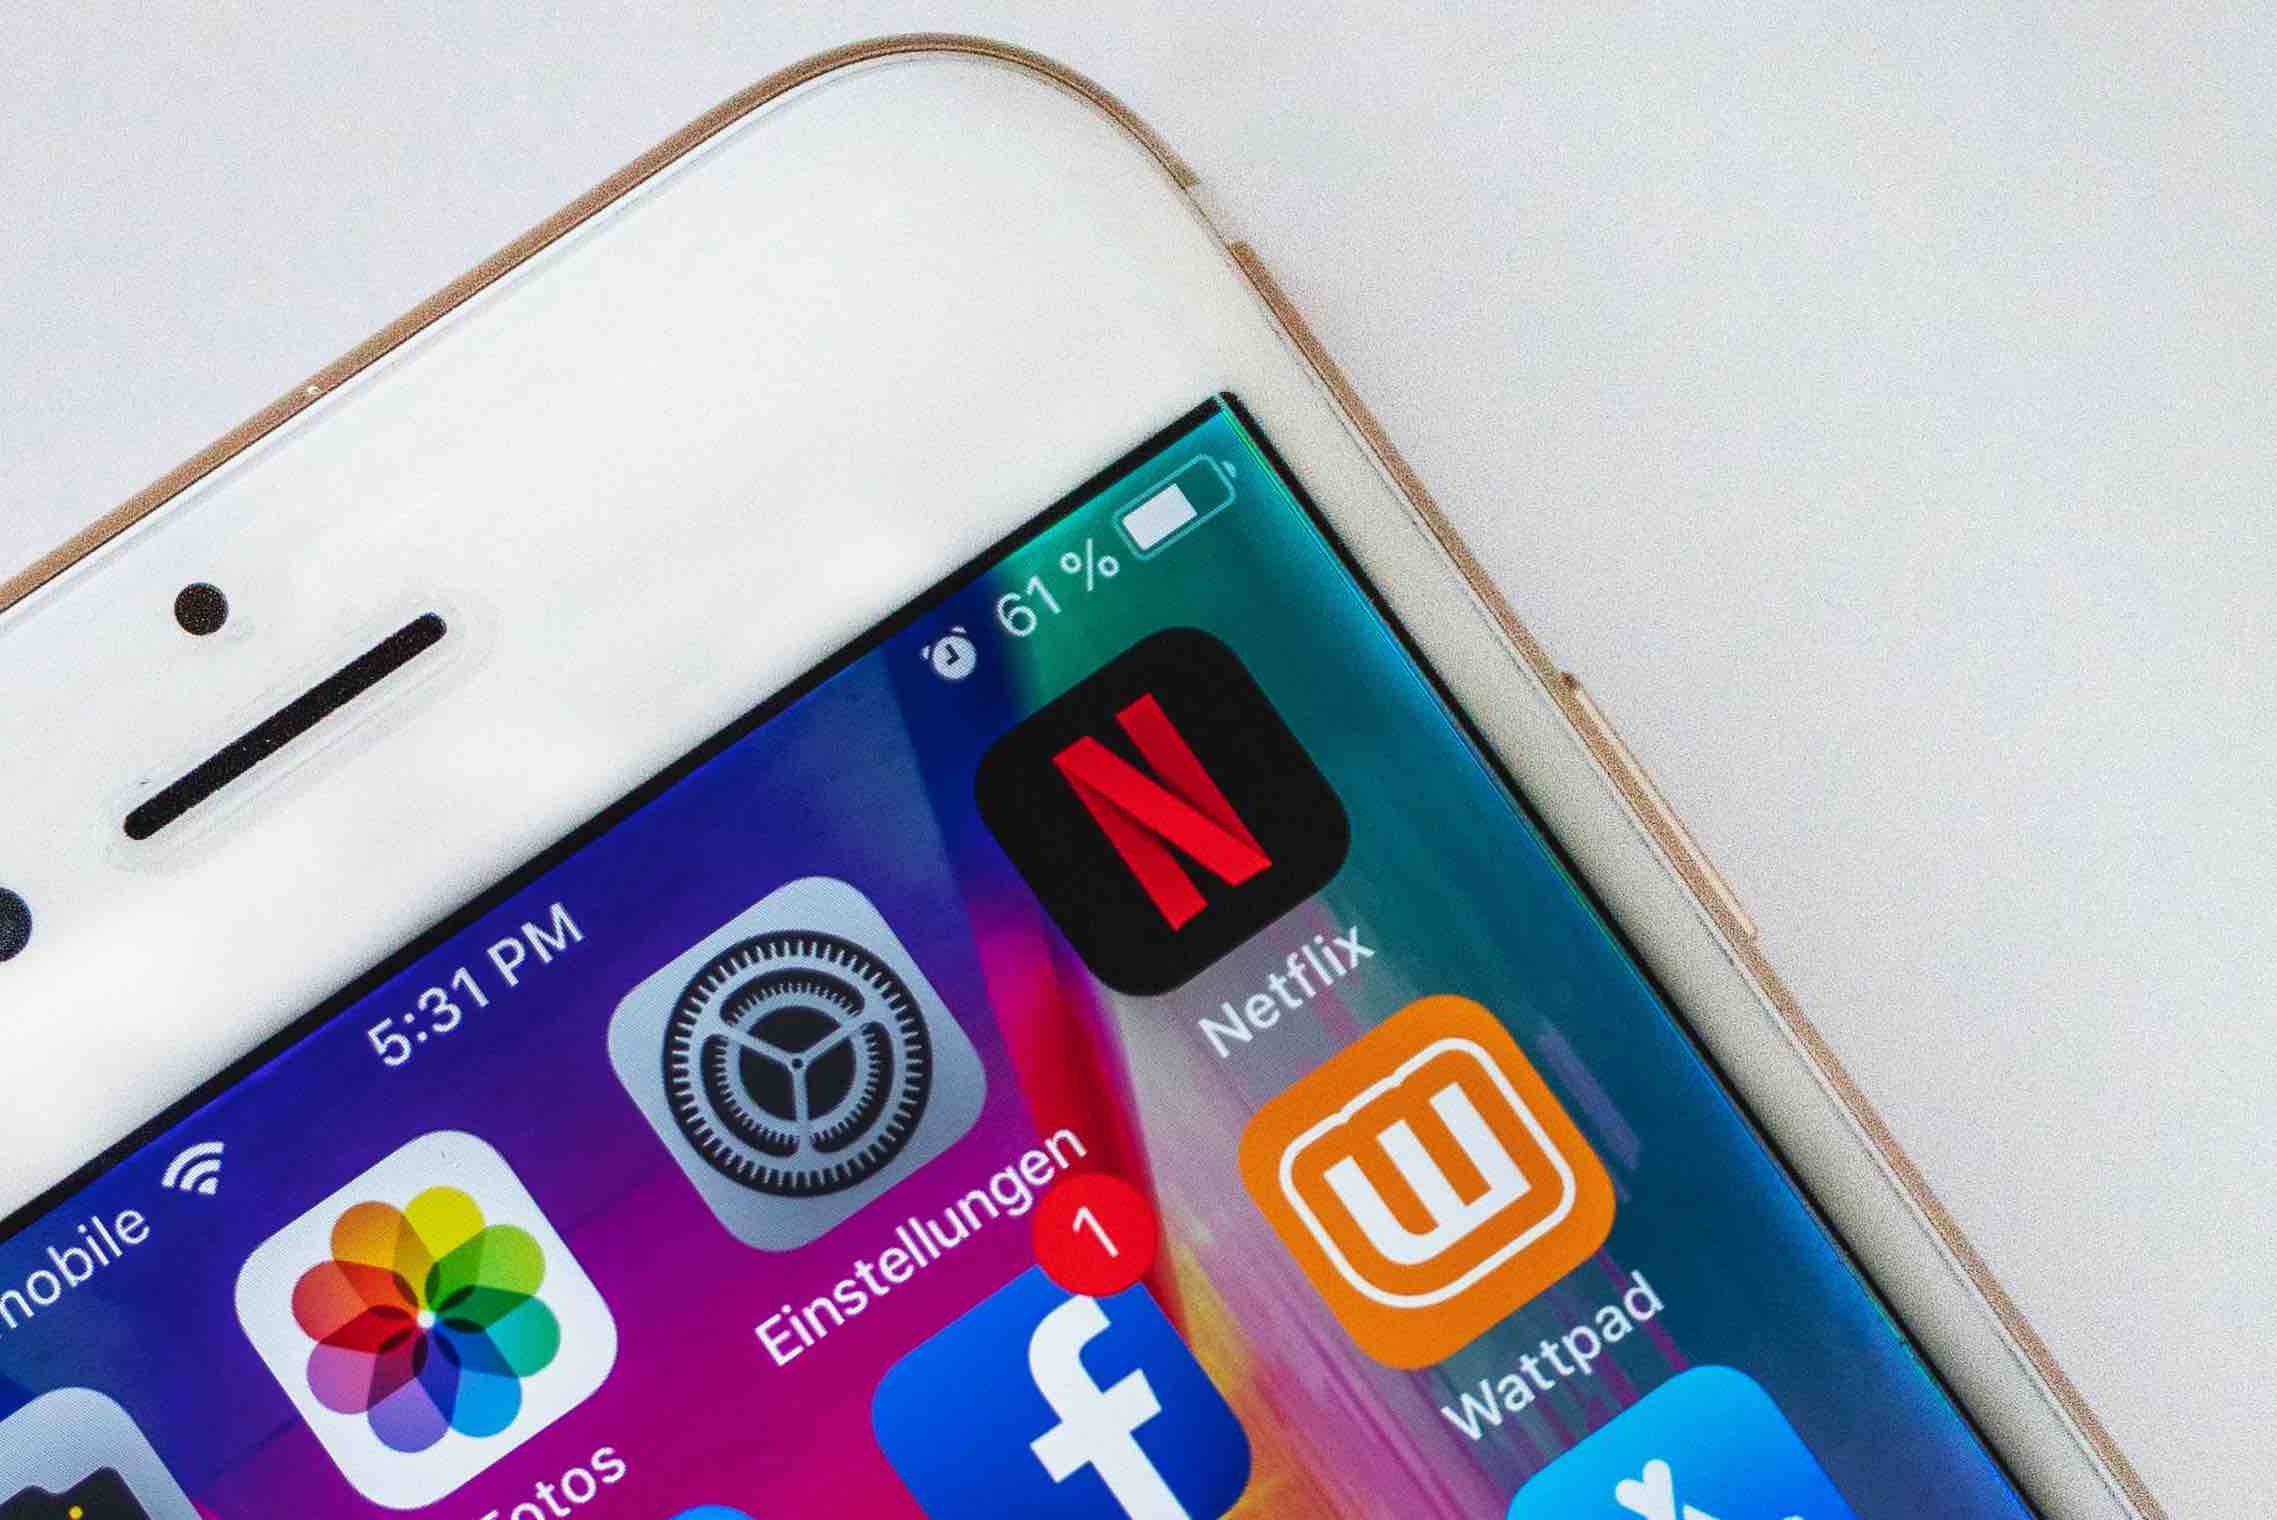 En 1 an, Netflix a augmenté de 90% ses revenus mobiles